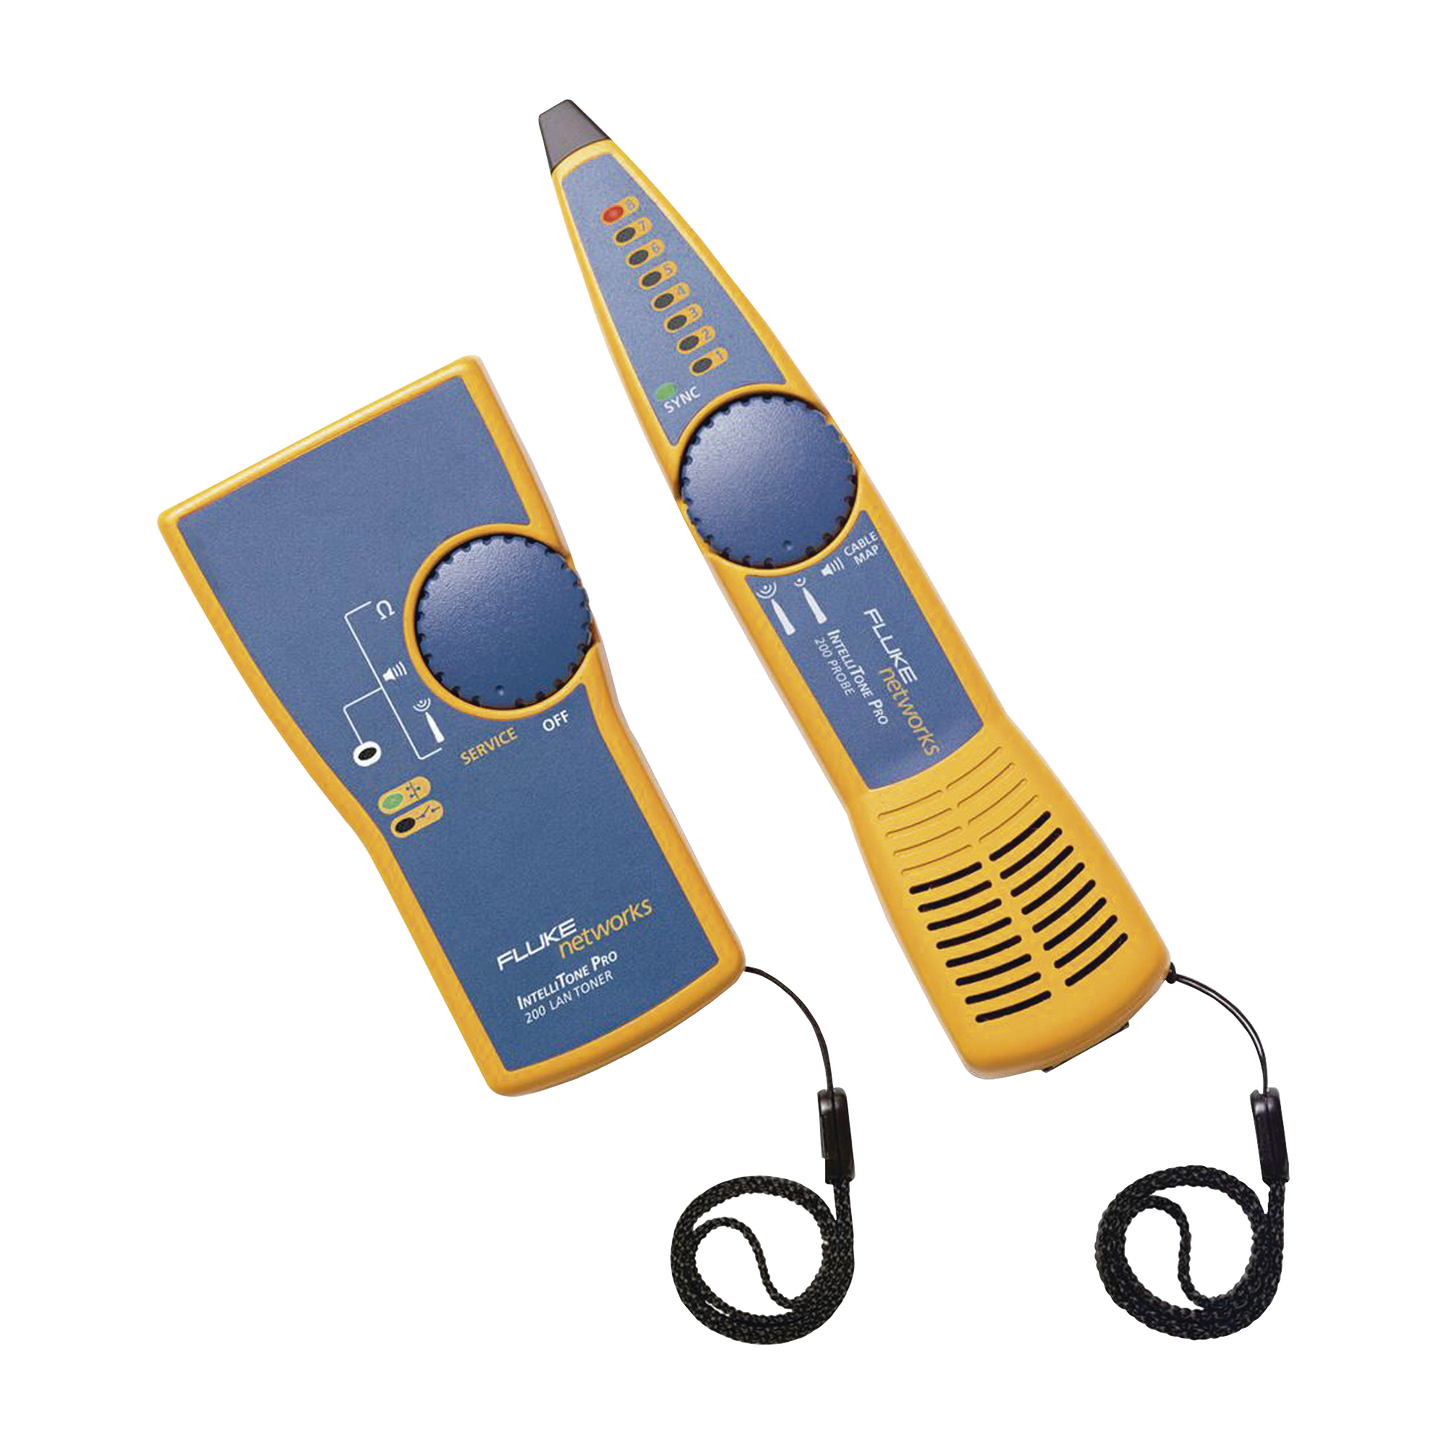 Kit Avanzado de Generador y Sonda (Detector) de Tonos IntelliTone™ 200, Para Identificación de Señales Analogicas y Digitales en Cables de Red